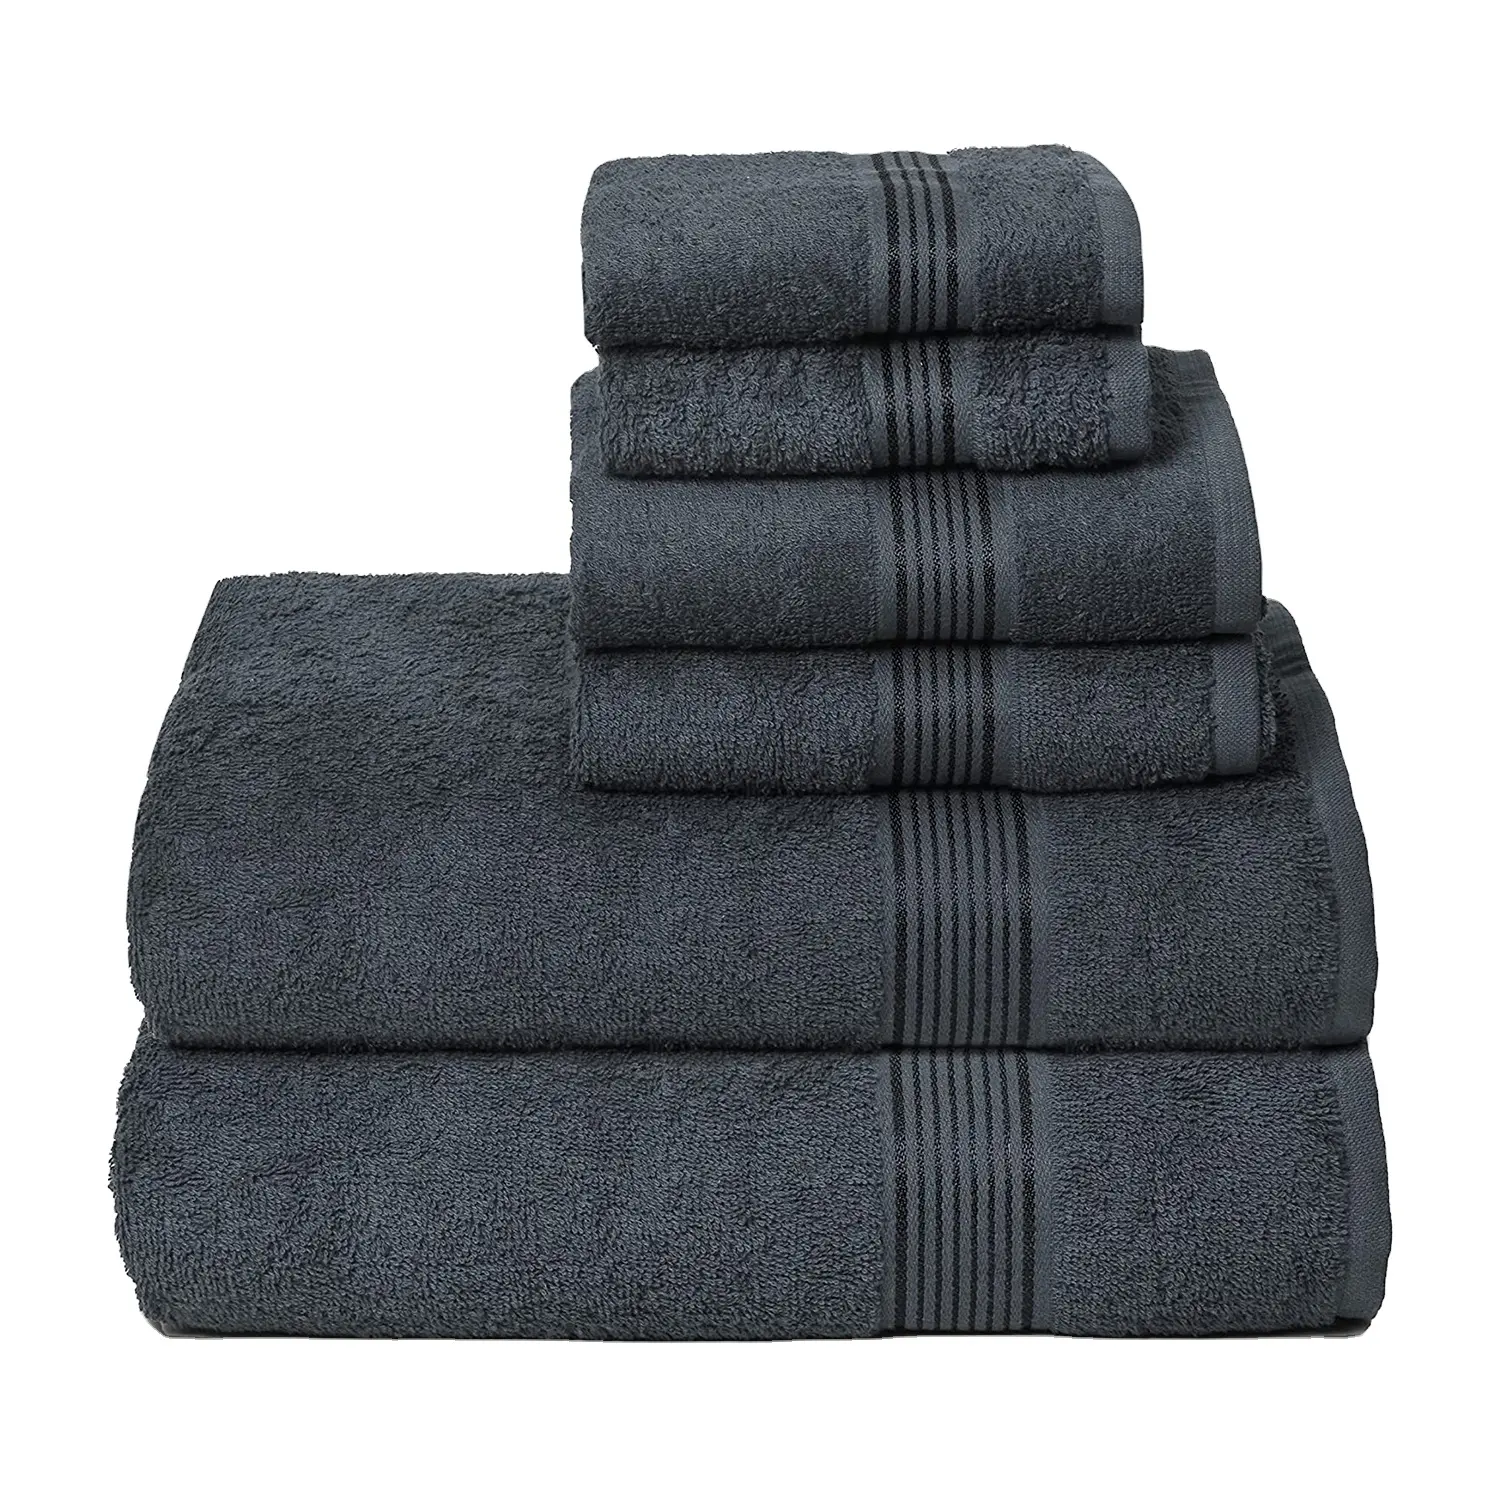 Groothandel Badhanddoek Set Van 6 Ultra Zachte Snelle Droge Katoenen Handdoeken Bulk Aangepaste Handdoeken Voor Badkamer, Hotel, Spa En Salon